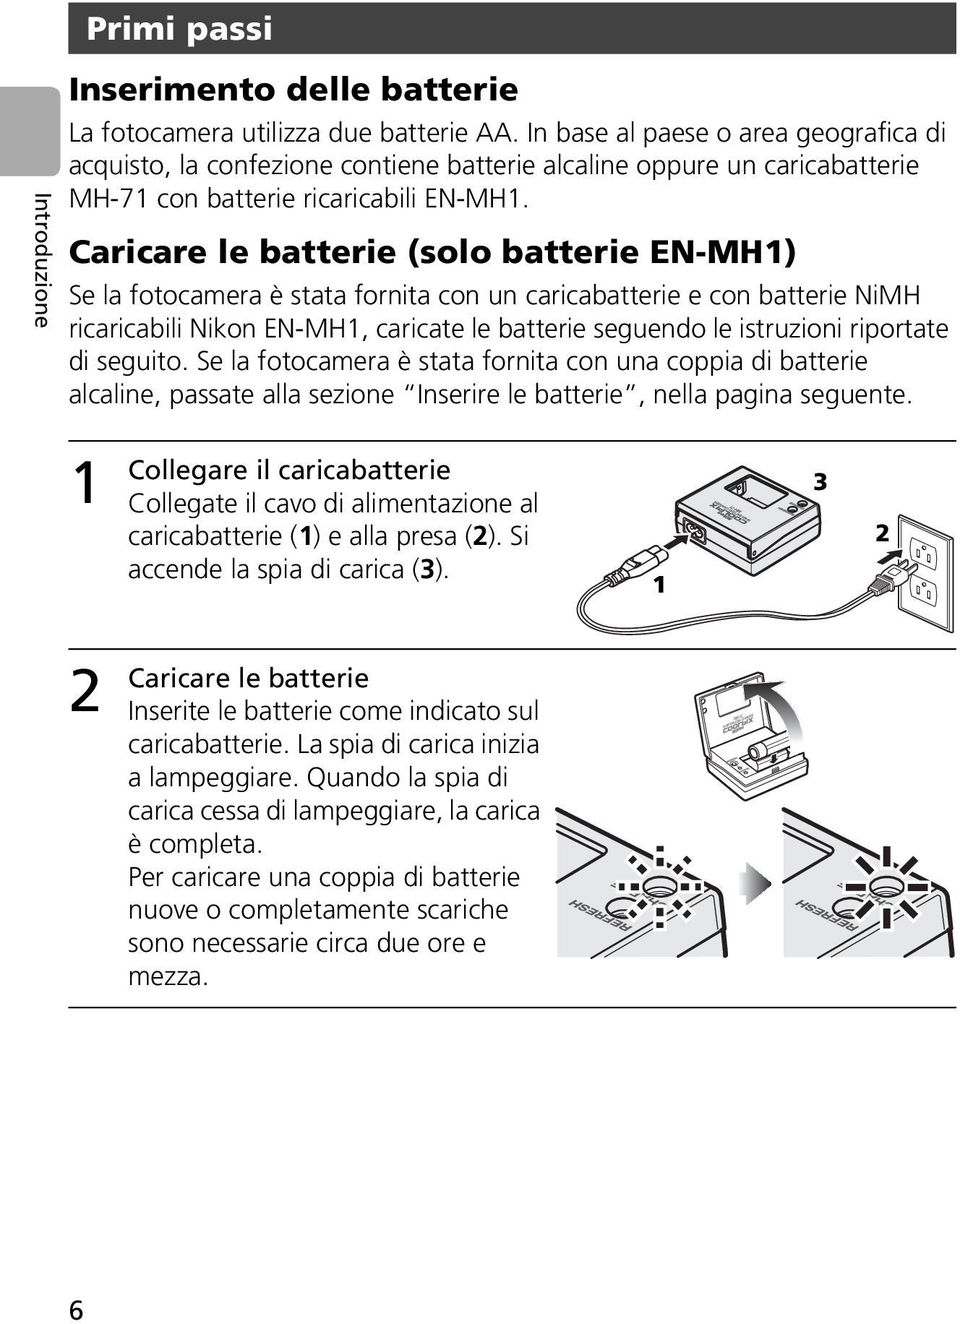 Caricare le batterie (solo batterie EN-MH1) Se la fotocamera è stata fornita con un caricabatterie e con batterie NiMH ricaricabili Nikon EN-MH1, caricate le batterie seguendo le istruzioni riportate